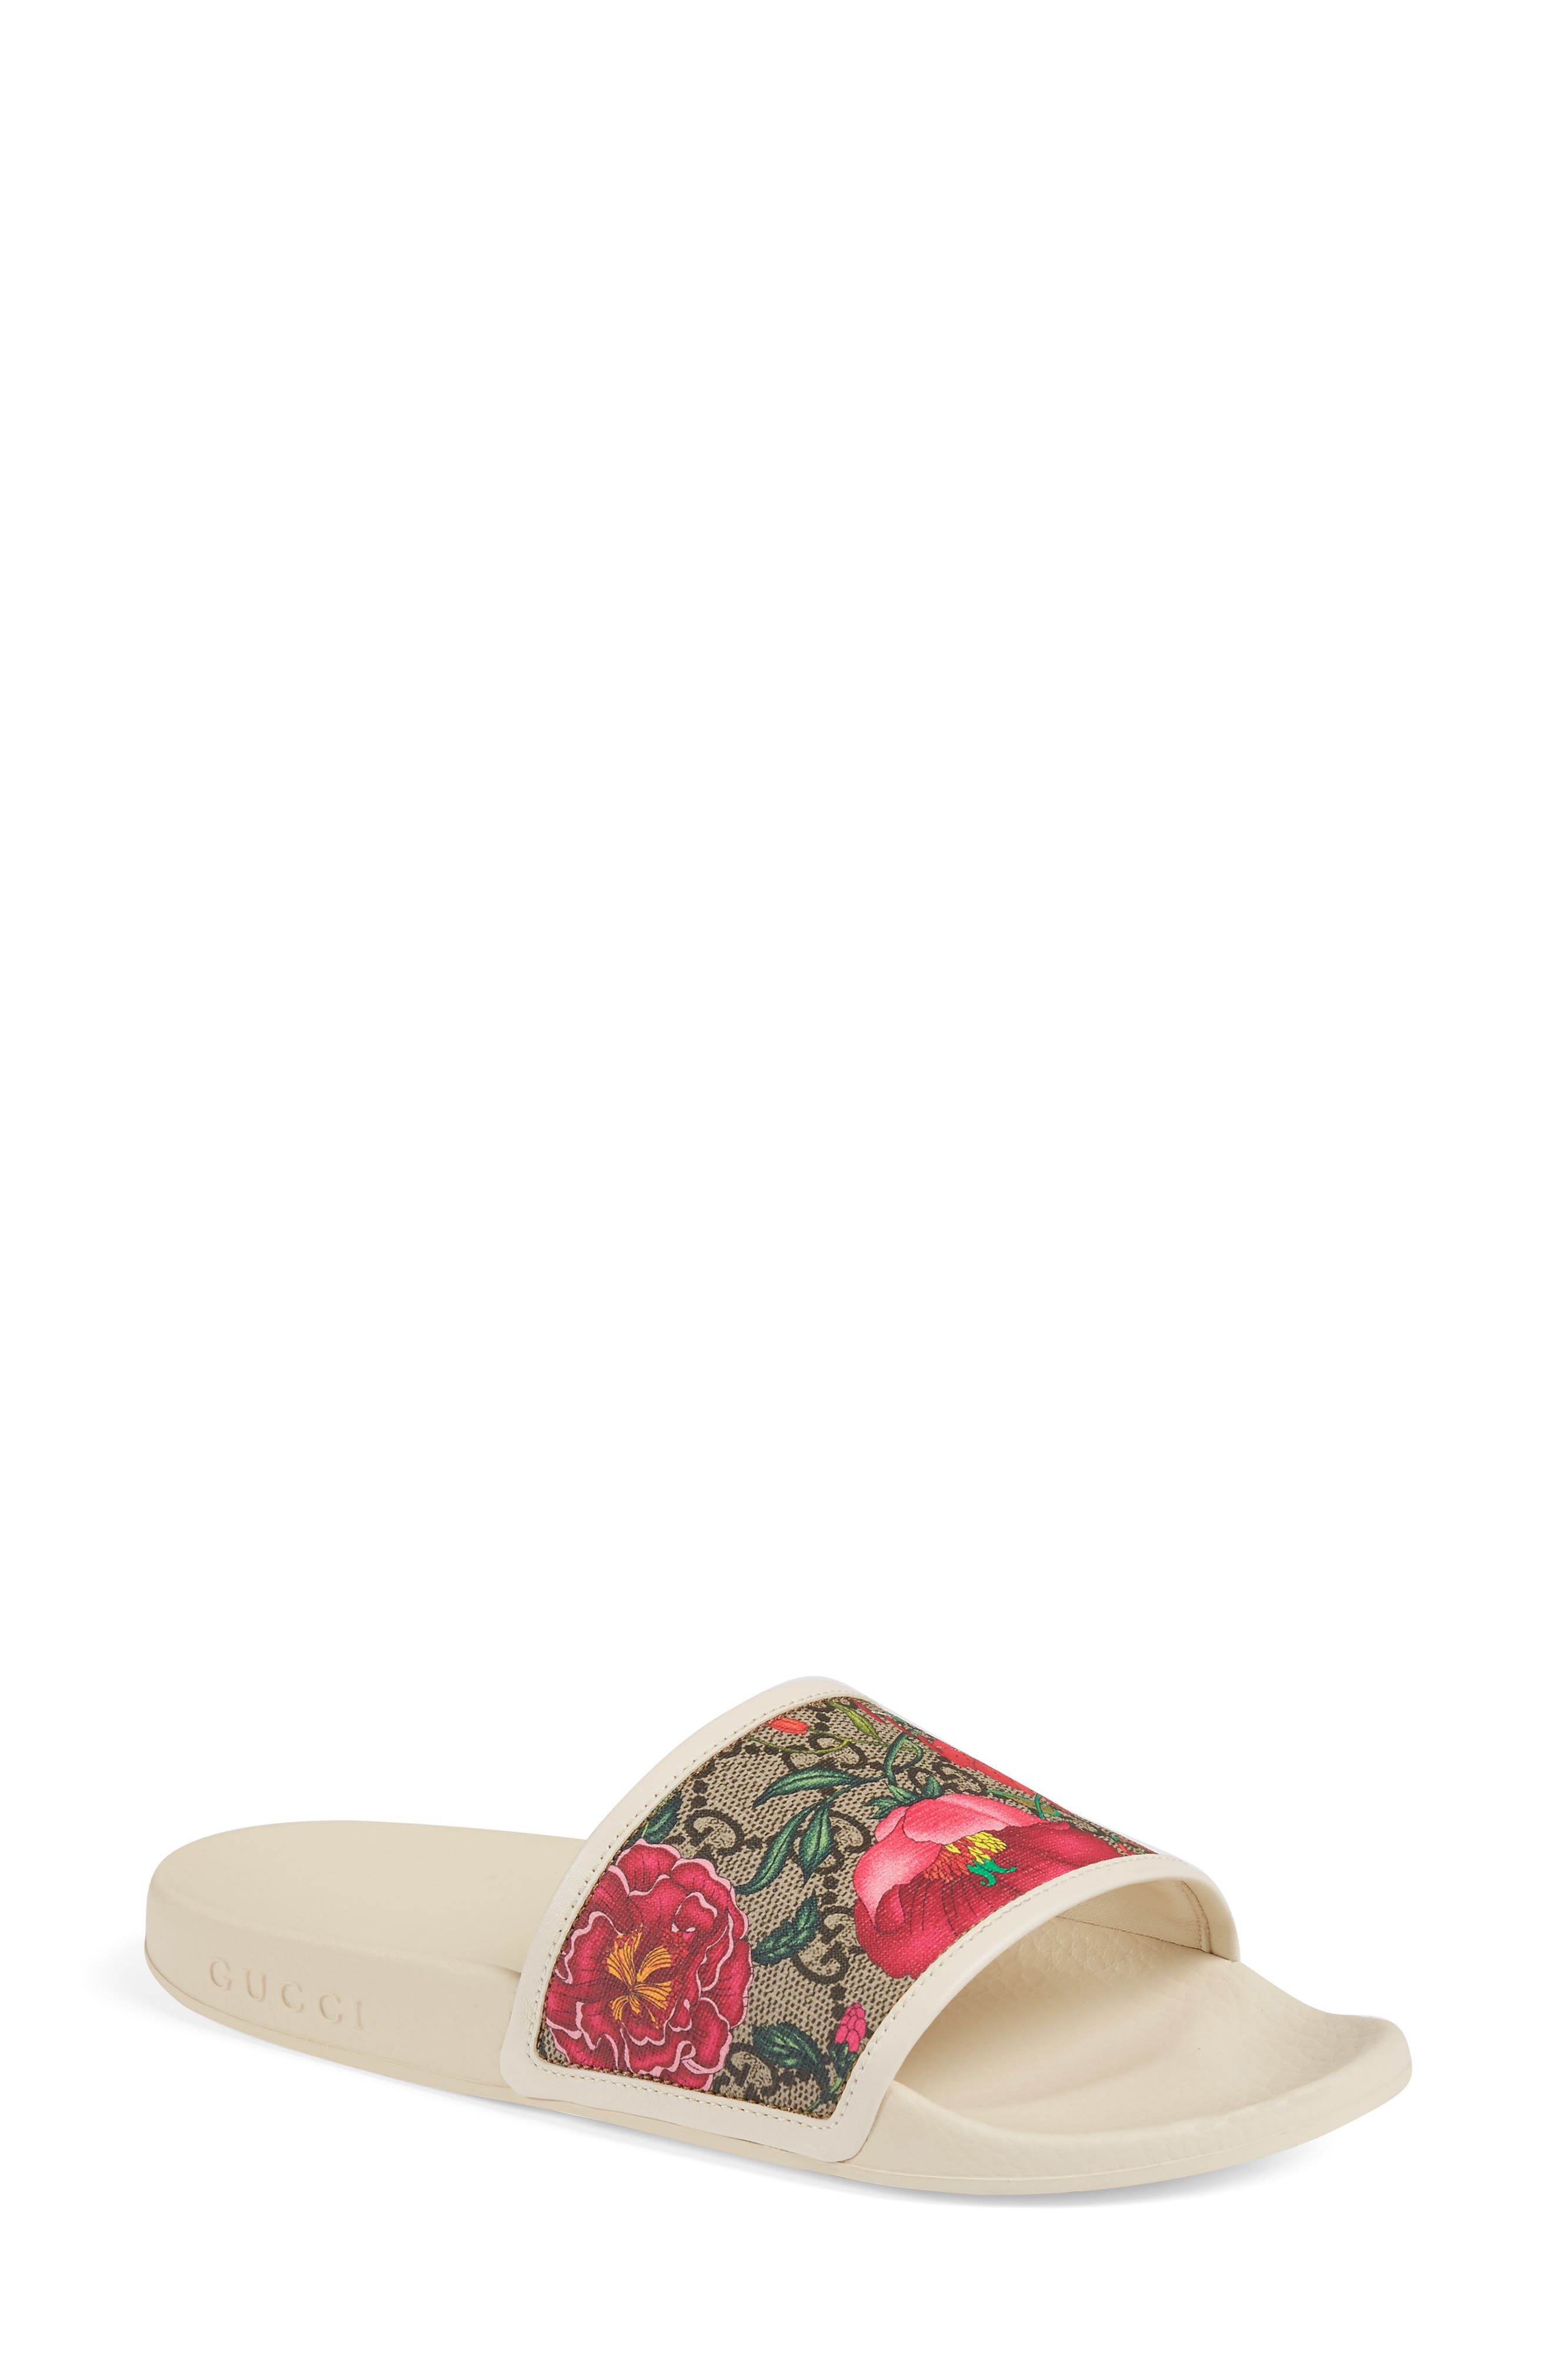 Gucci Floral GG Supreme Slide Sandal 